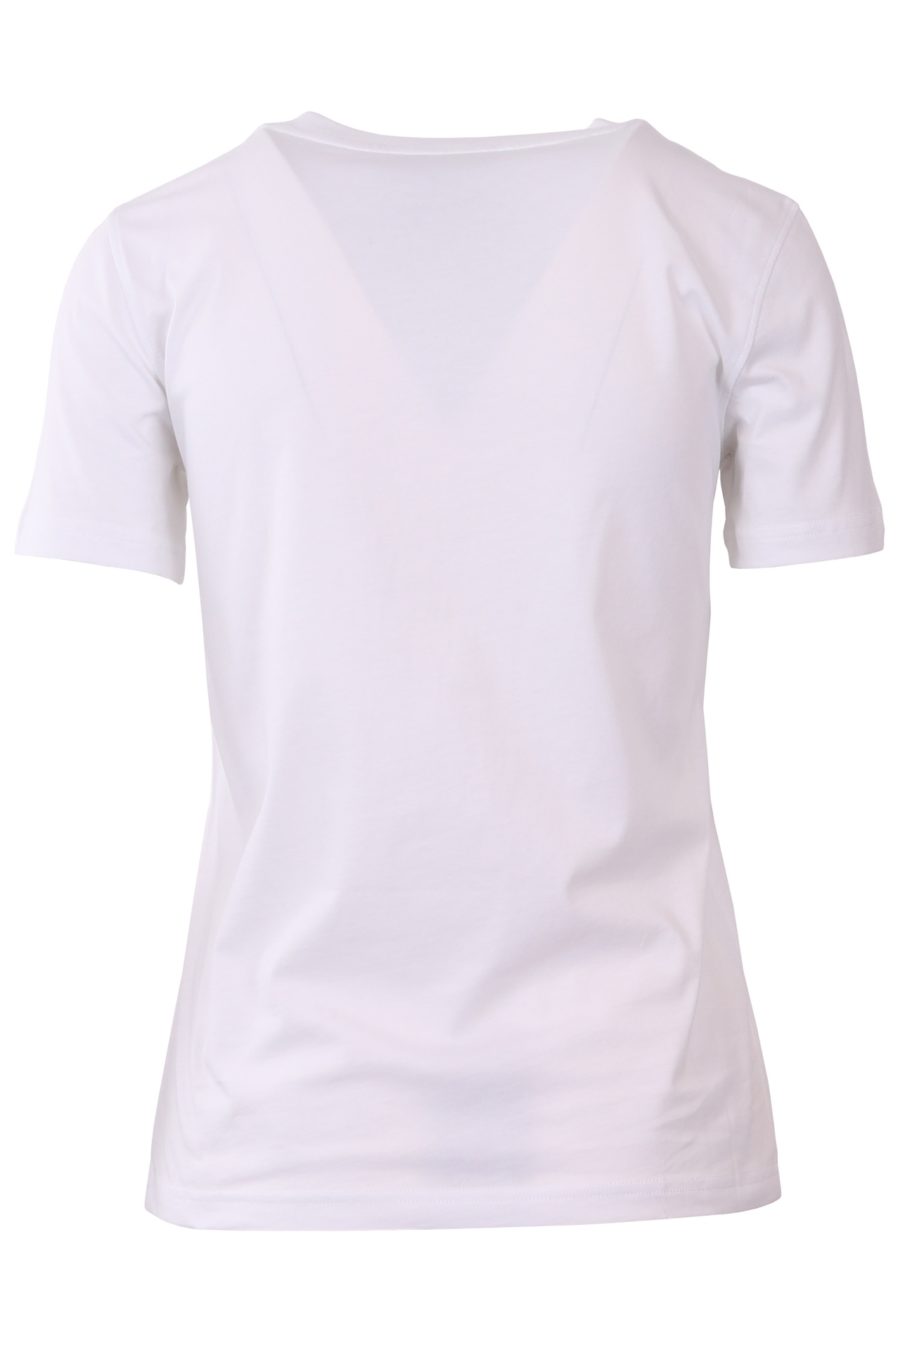 T-Shirt Moschino Couture weiß mit großem Mailänder Logo - a77ad4470c89934a96999f0ebd0fe0313878d905